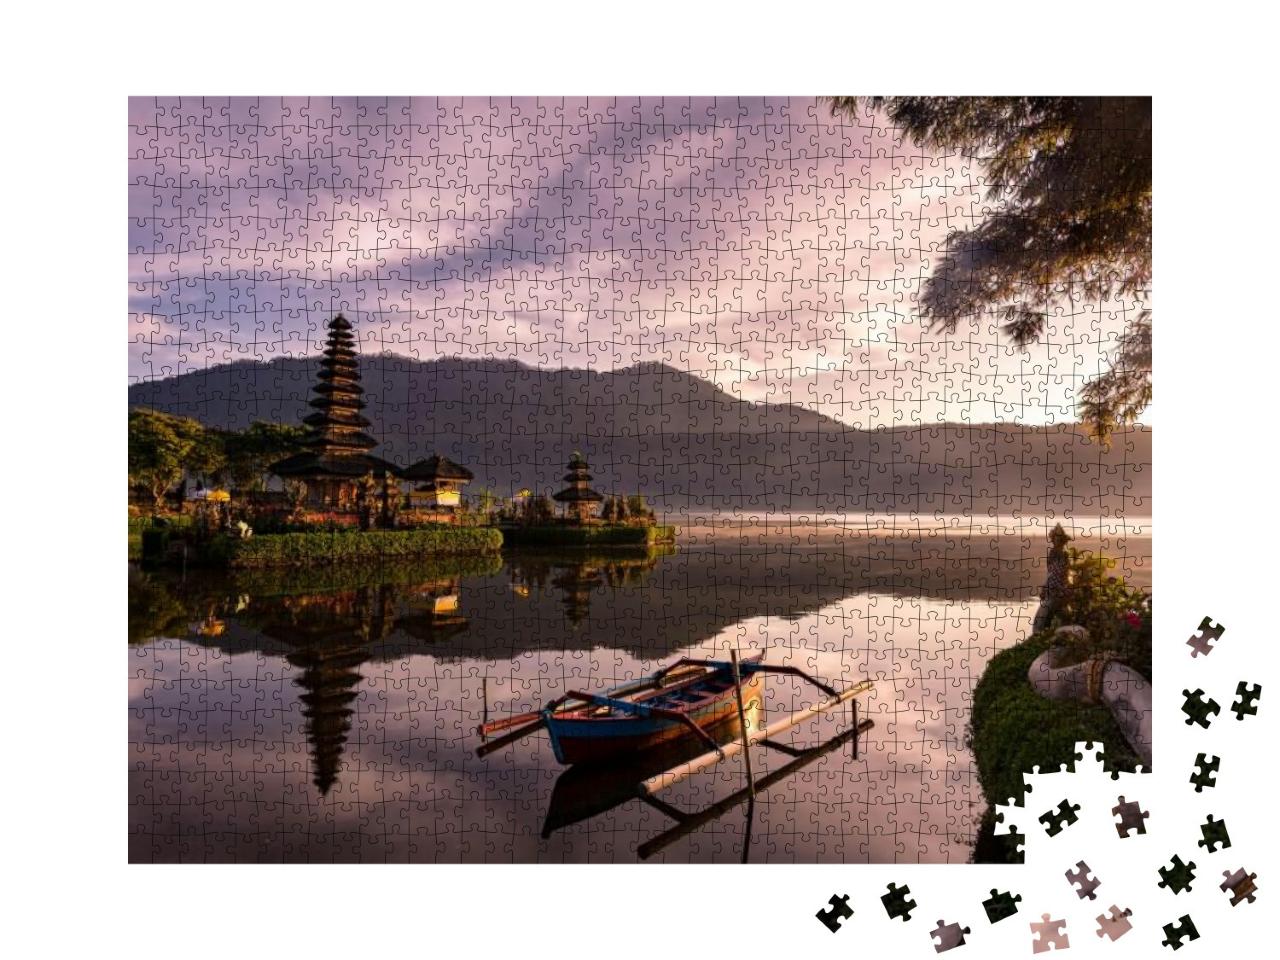 Puzzle 1000 Teile „Wunderschöner Sonnenaufgang am See Bratan mit UlunDanu Tempel, Bali, Indonesien“